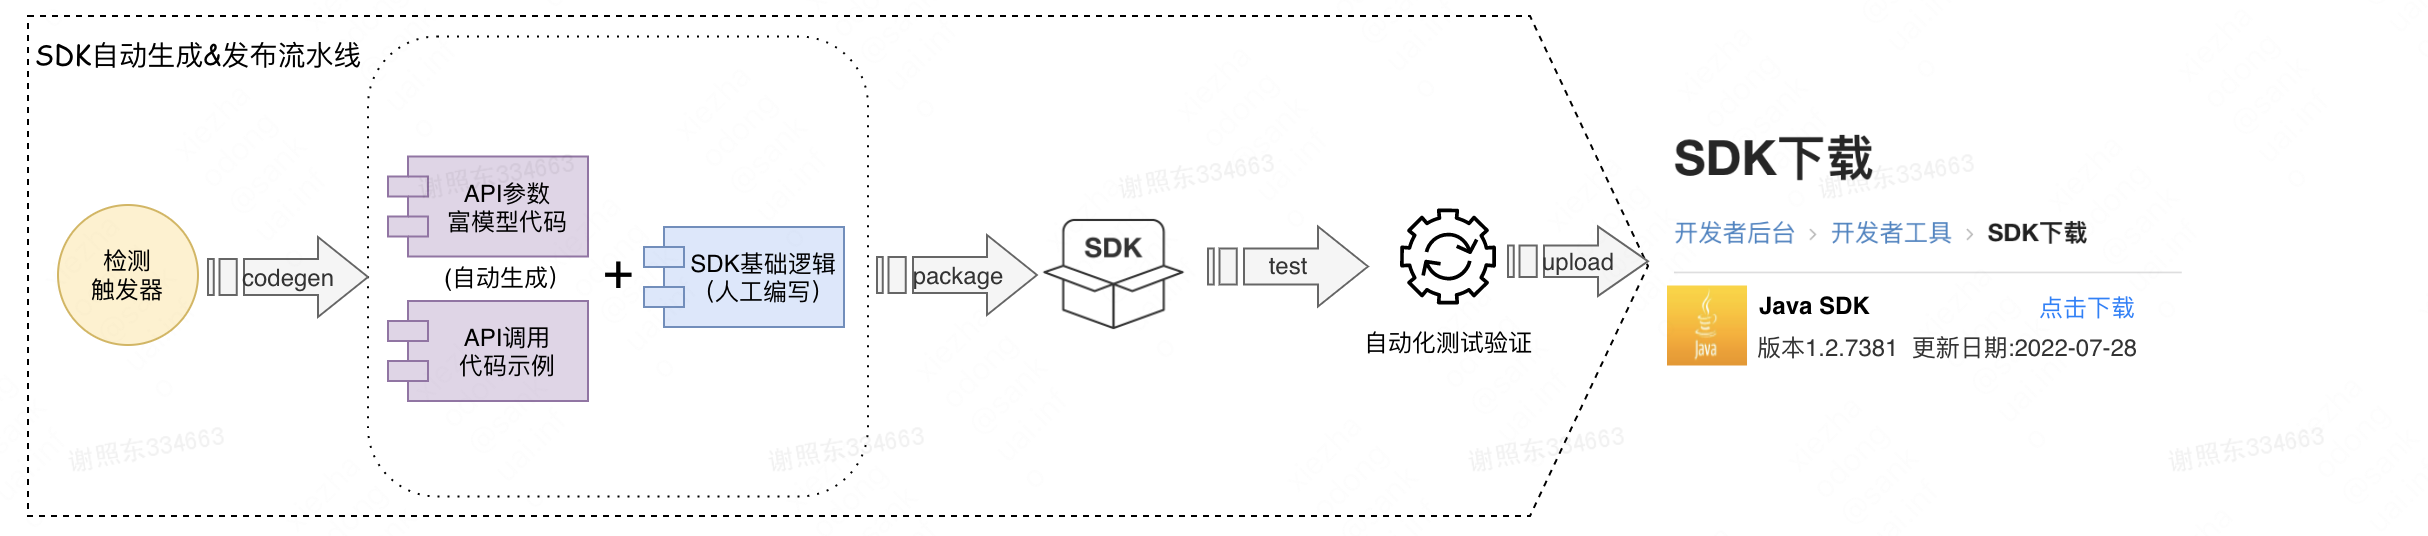 美团开放平台SDK自动生成技术与实践_前端_06